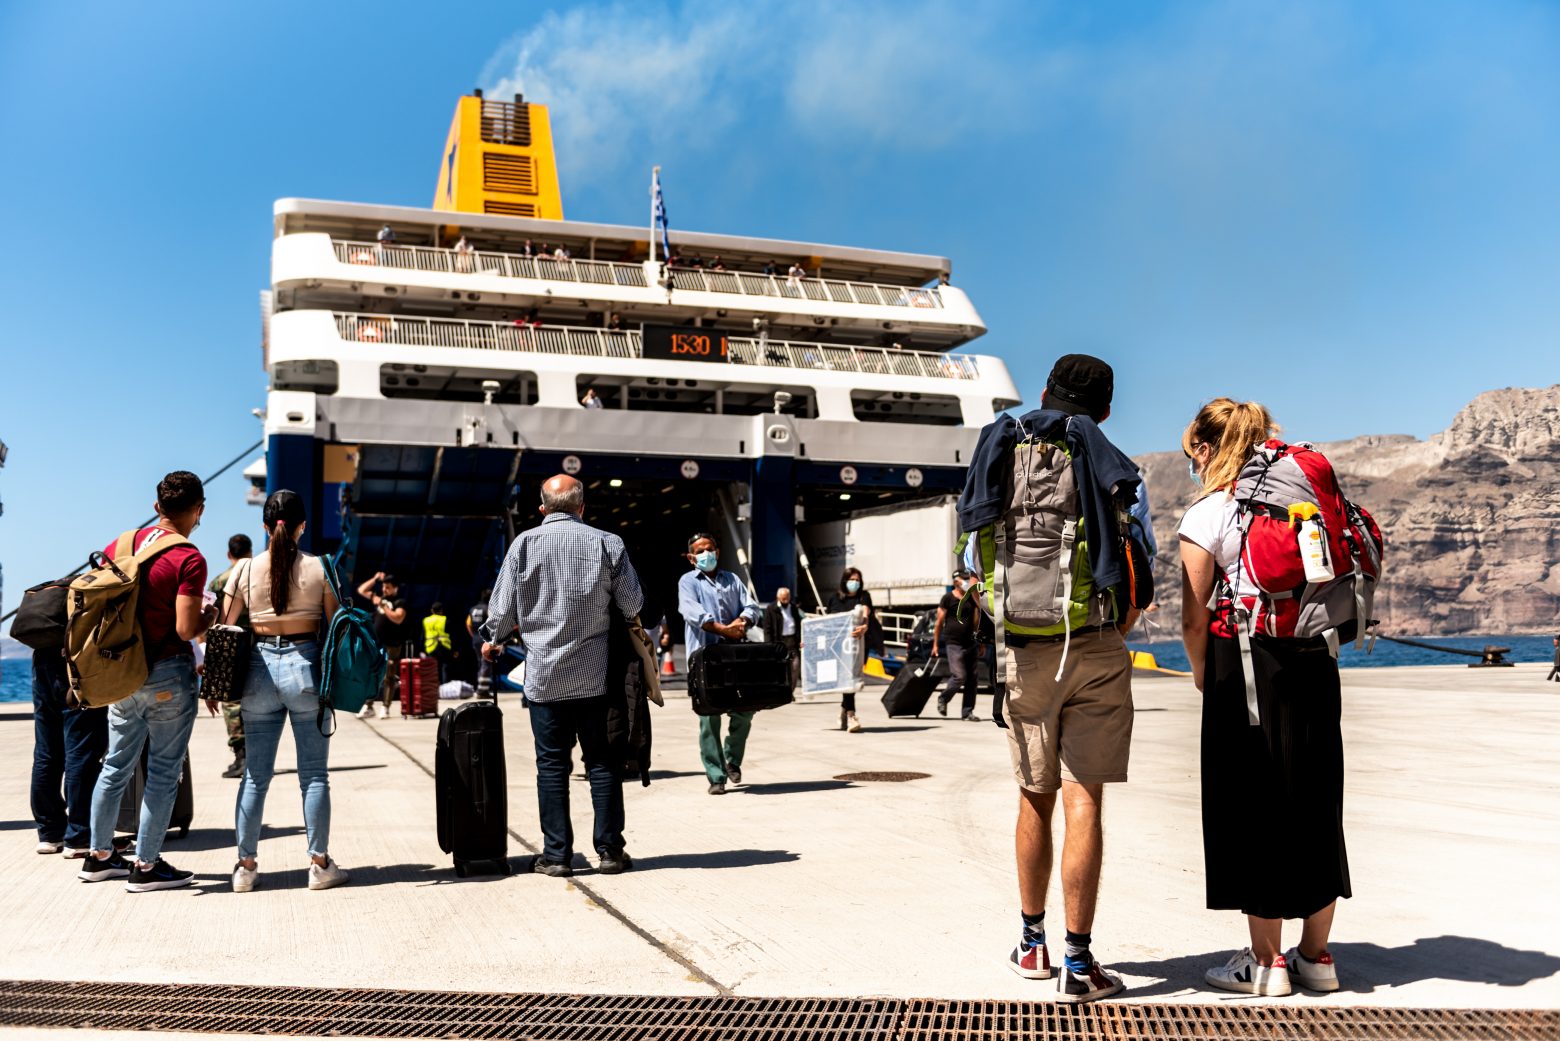 ΕΛΣΤΑΤ: Μείωση 47,6% στη διακίνηση επιβατών στους ελληνικούς λιμένες το δ’ τρίμηνο του 2020